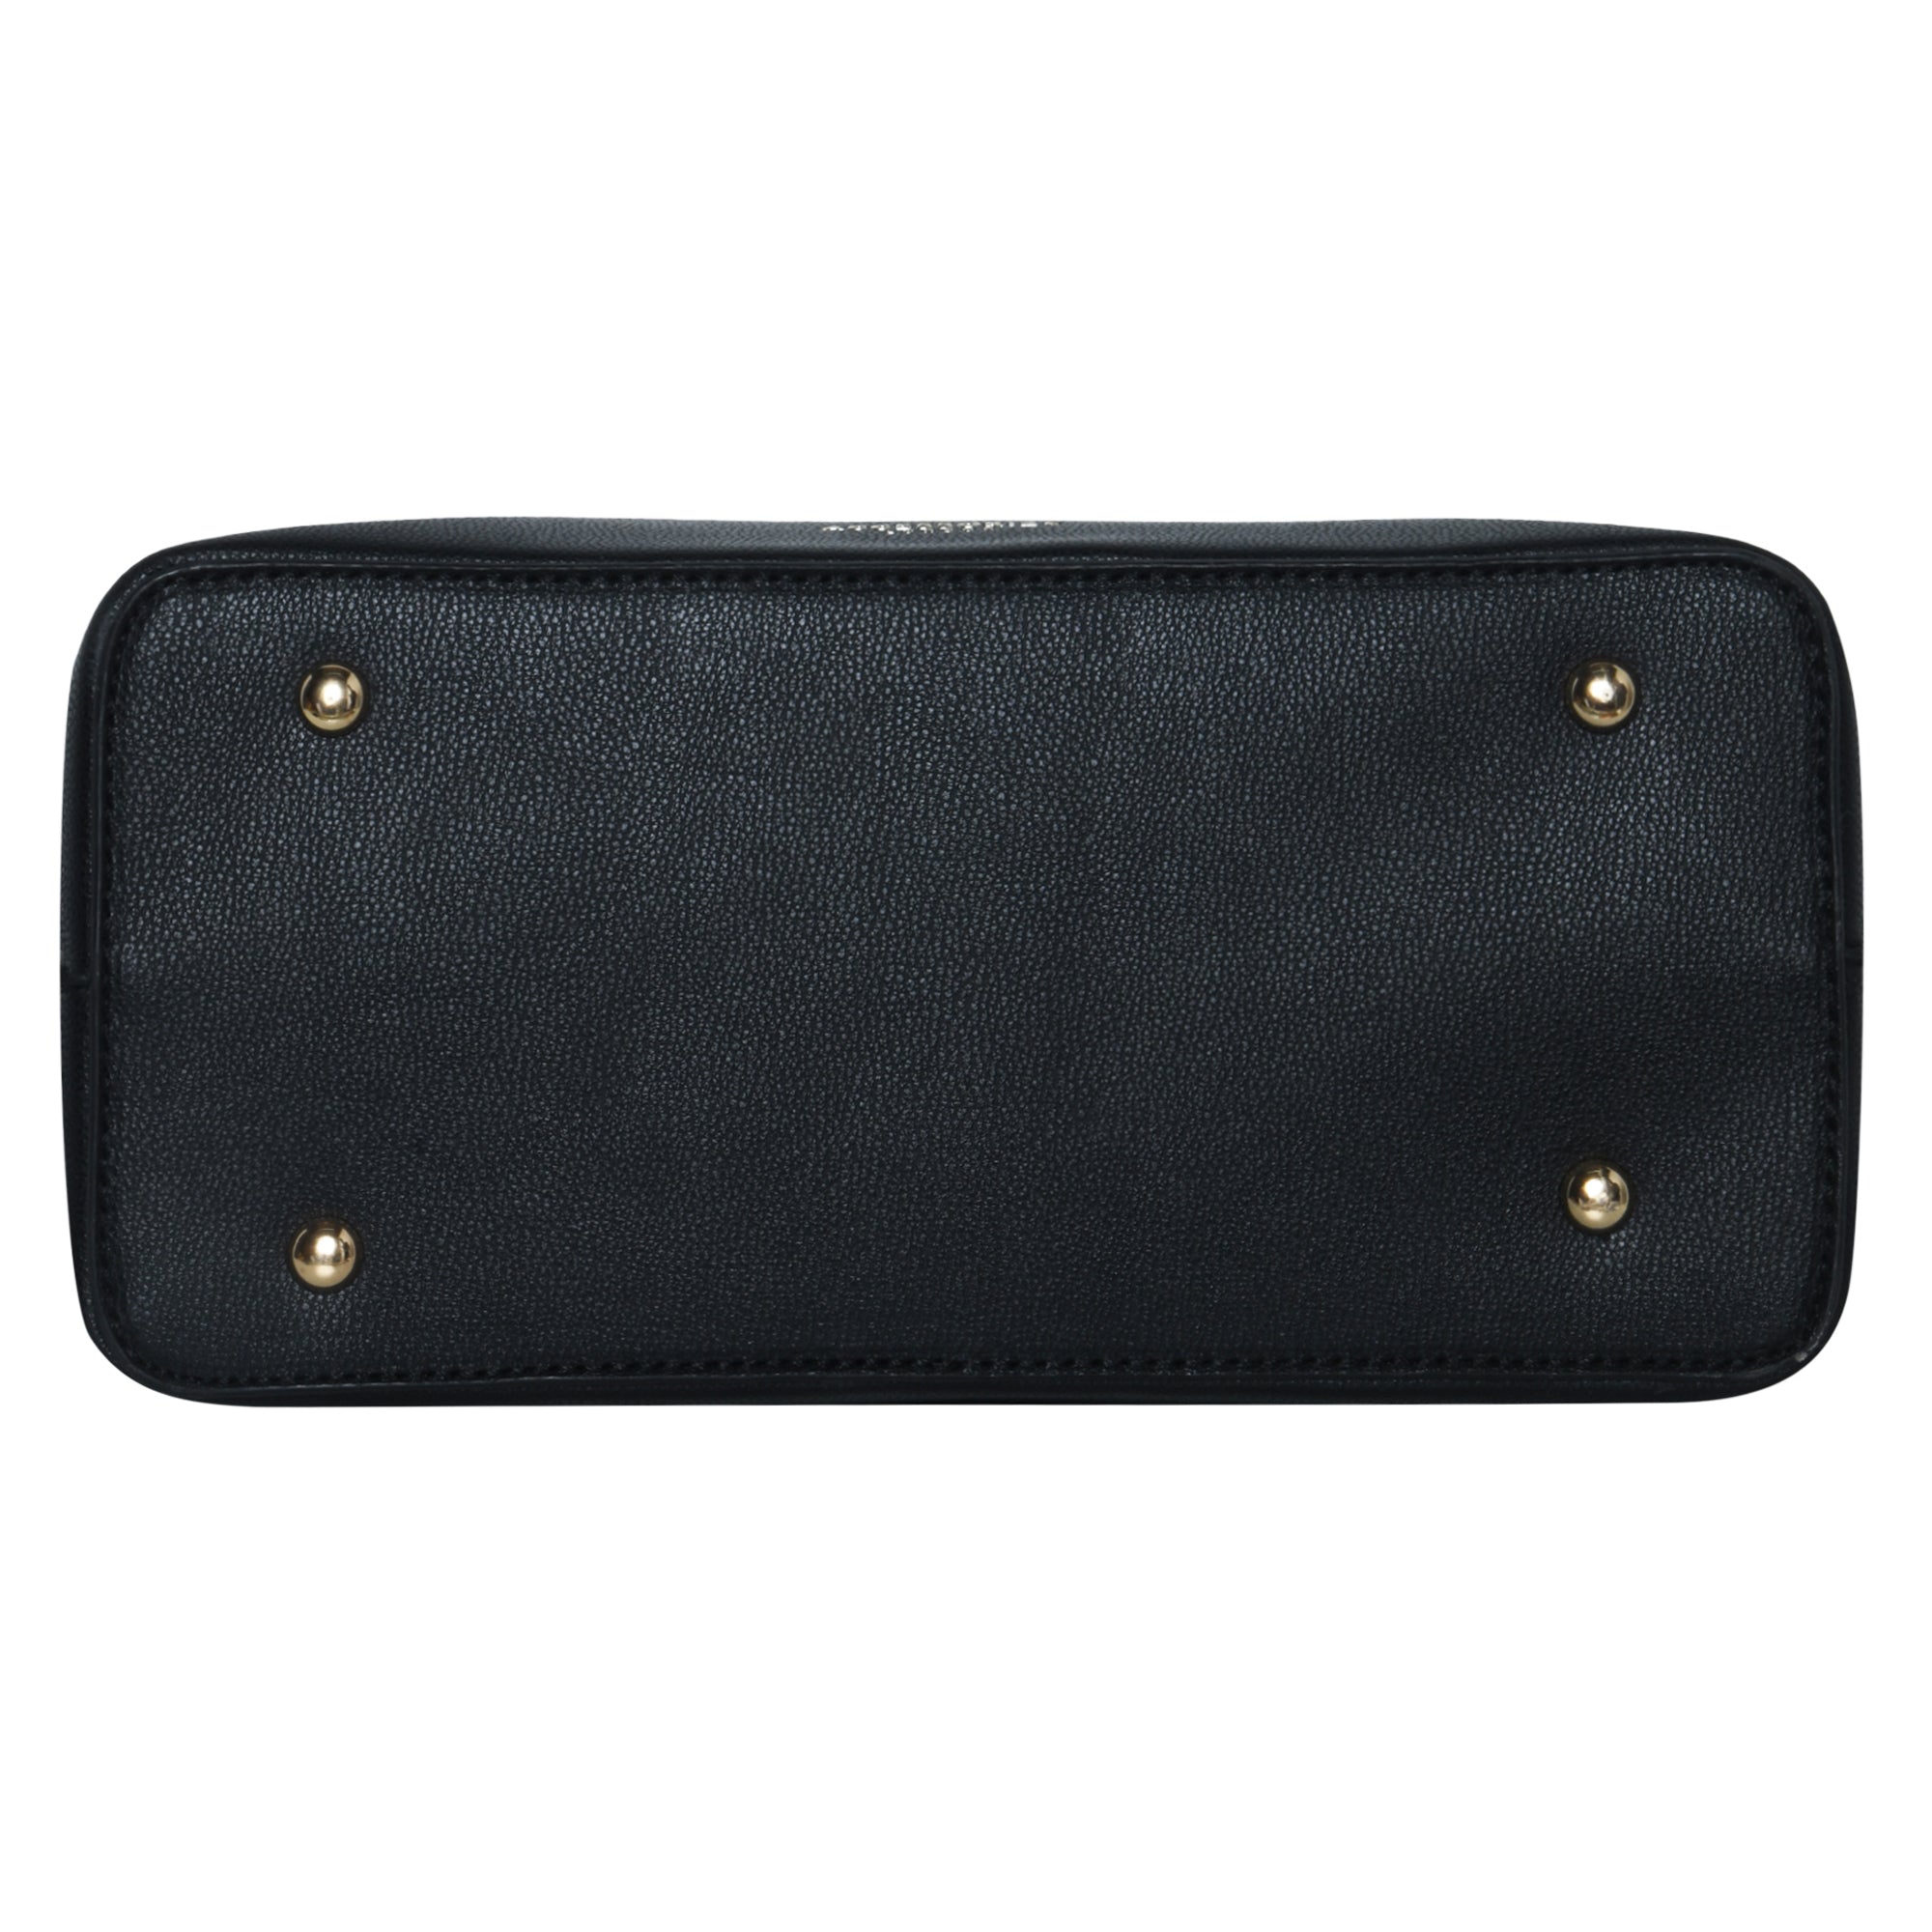 Accessorize London Women's Faux Leather Black Rosaline colorblock handheld Bag